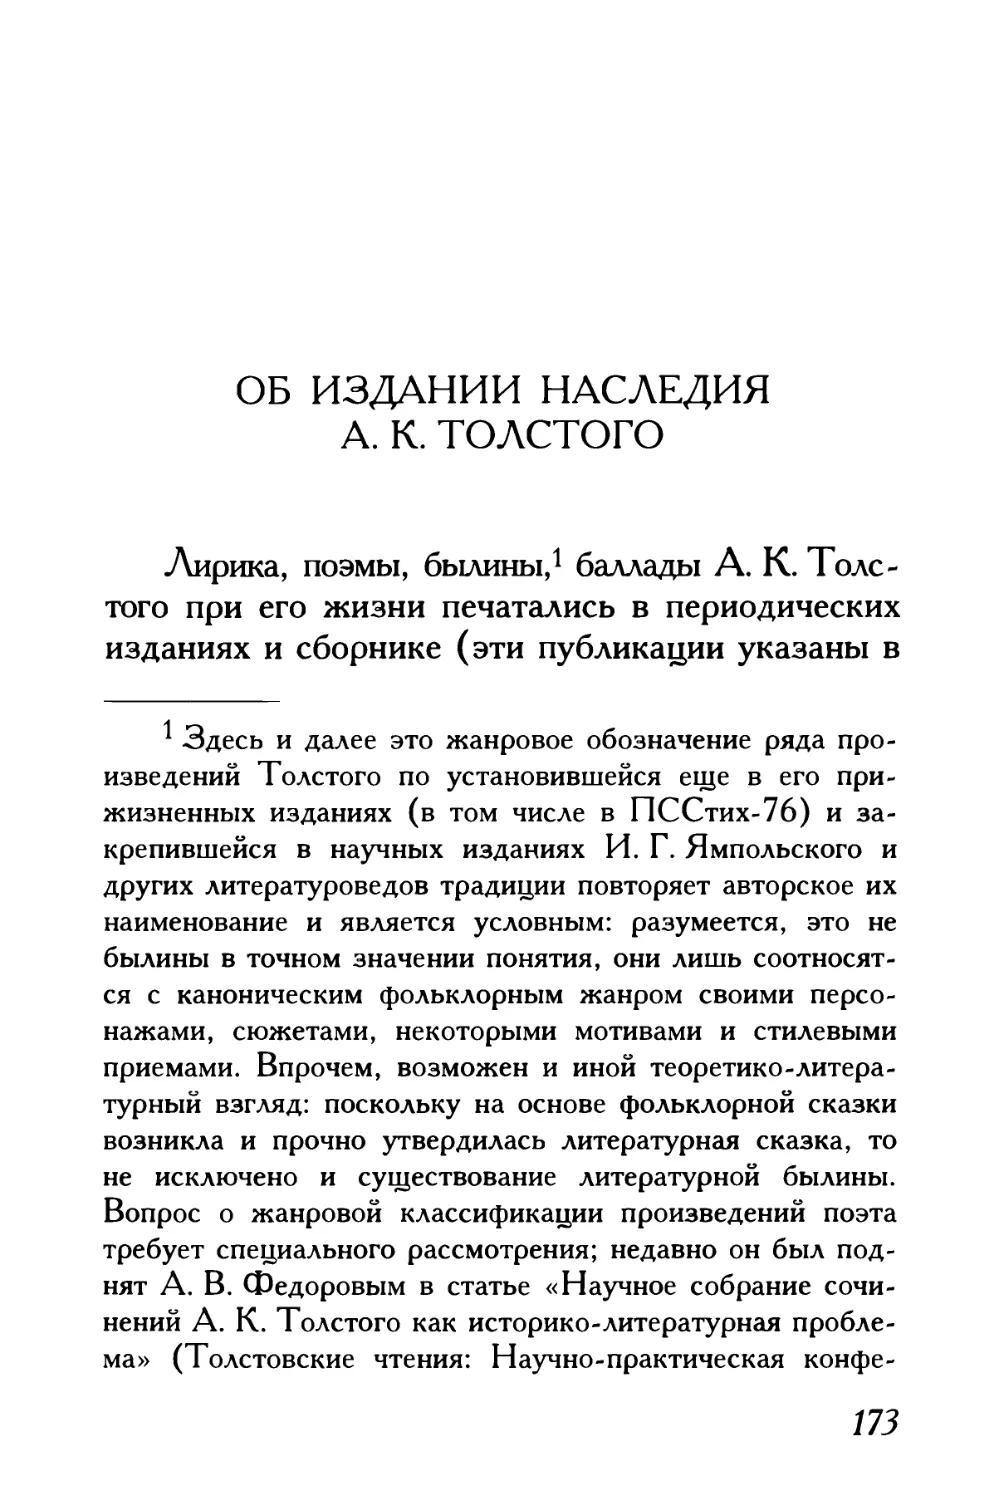 В. Л. Котельников. Об издании наследия А. К. Толстого